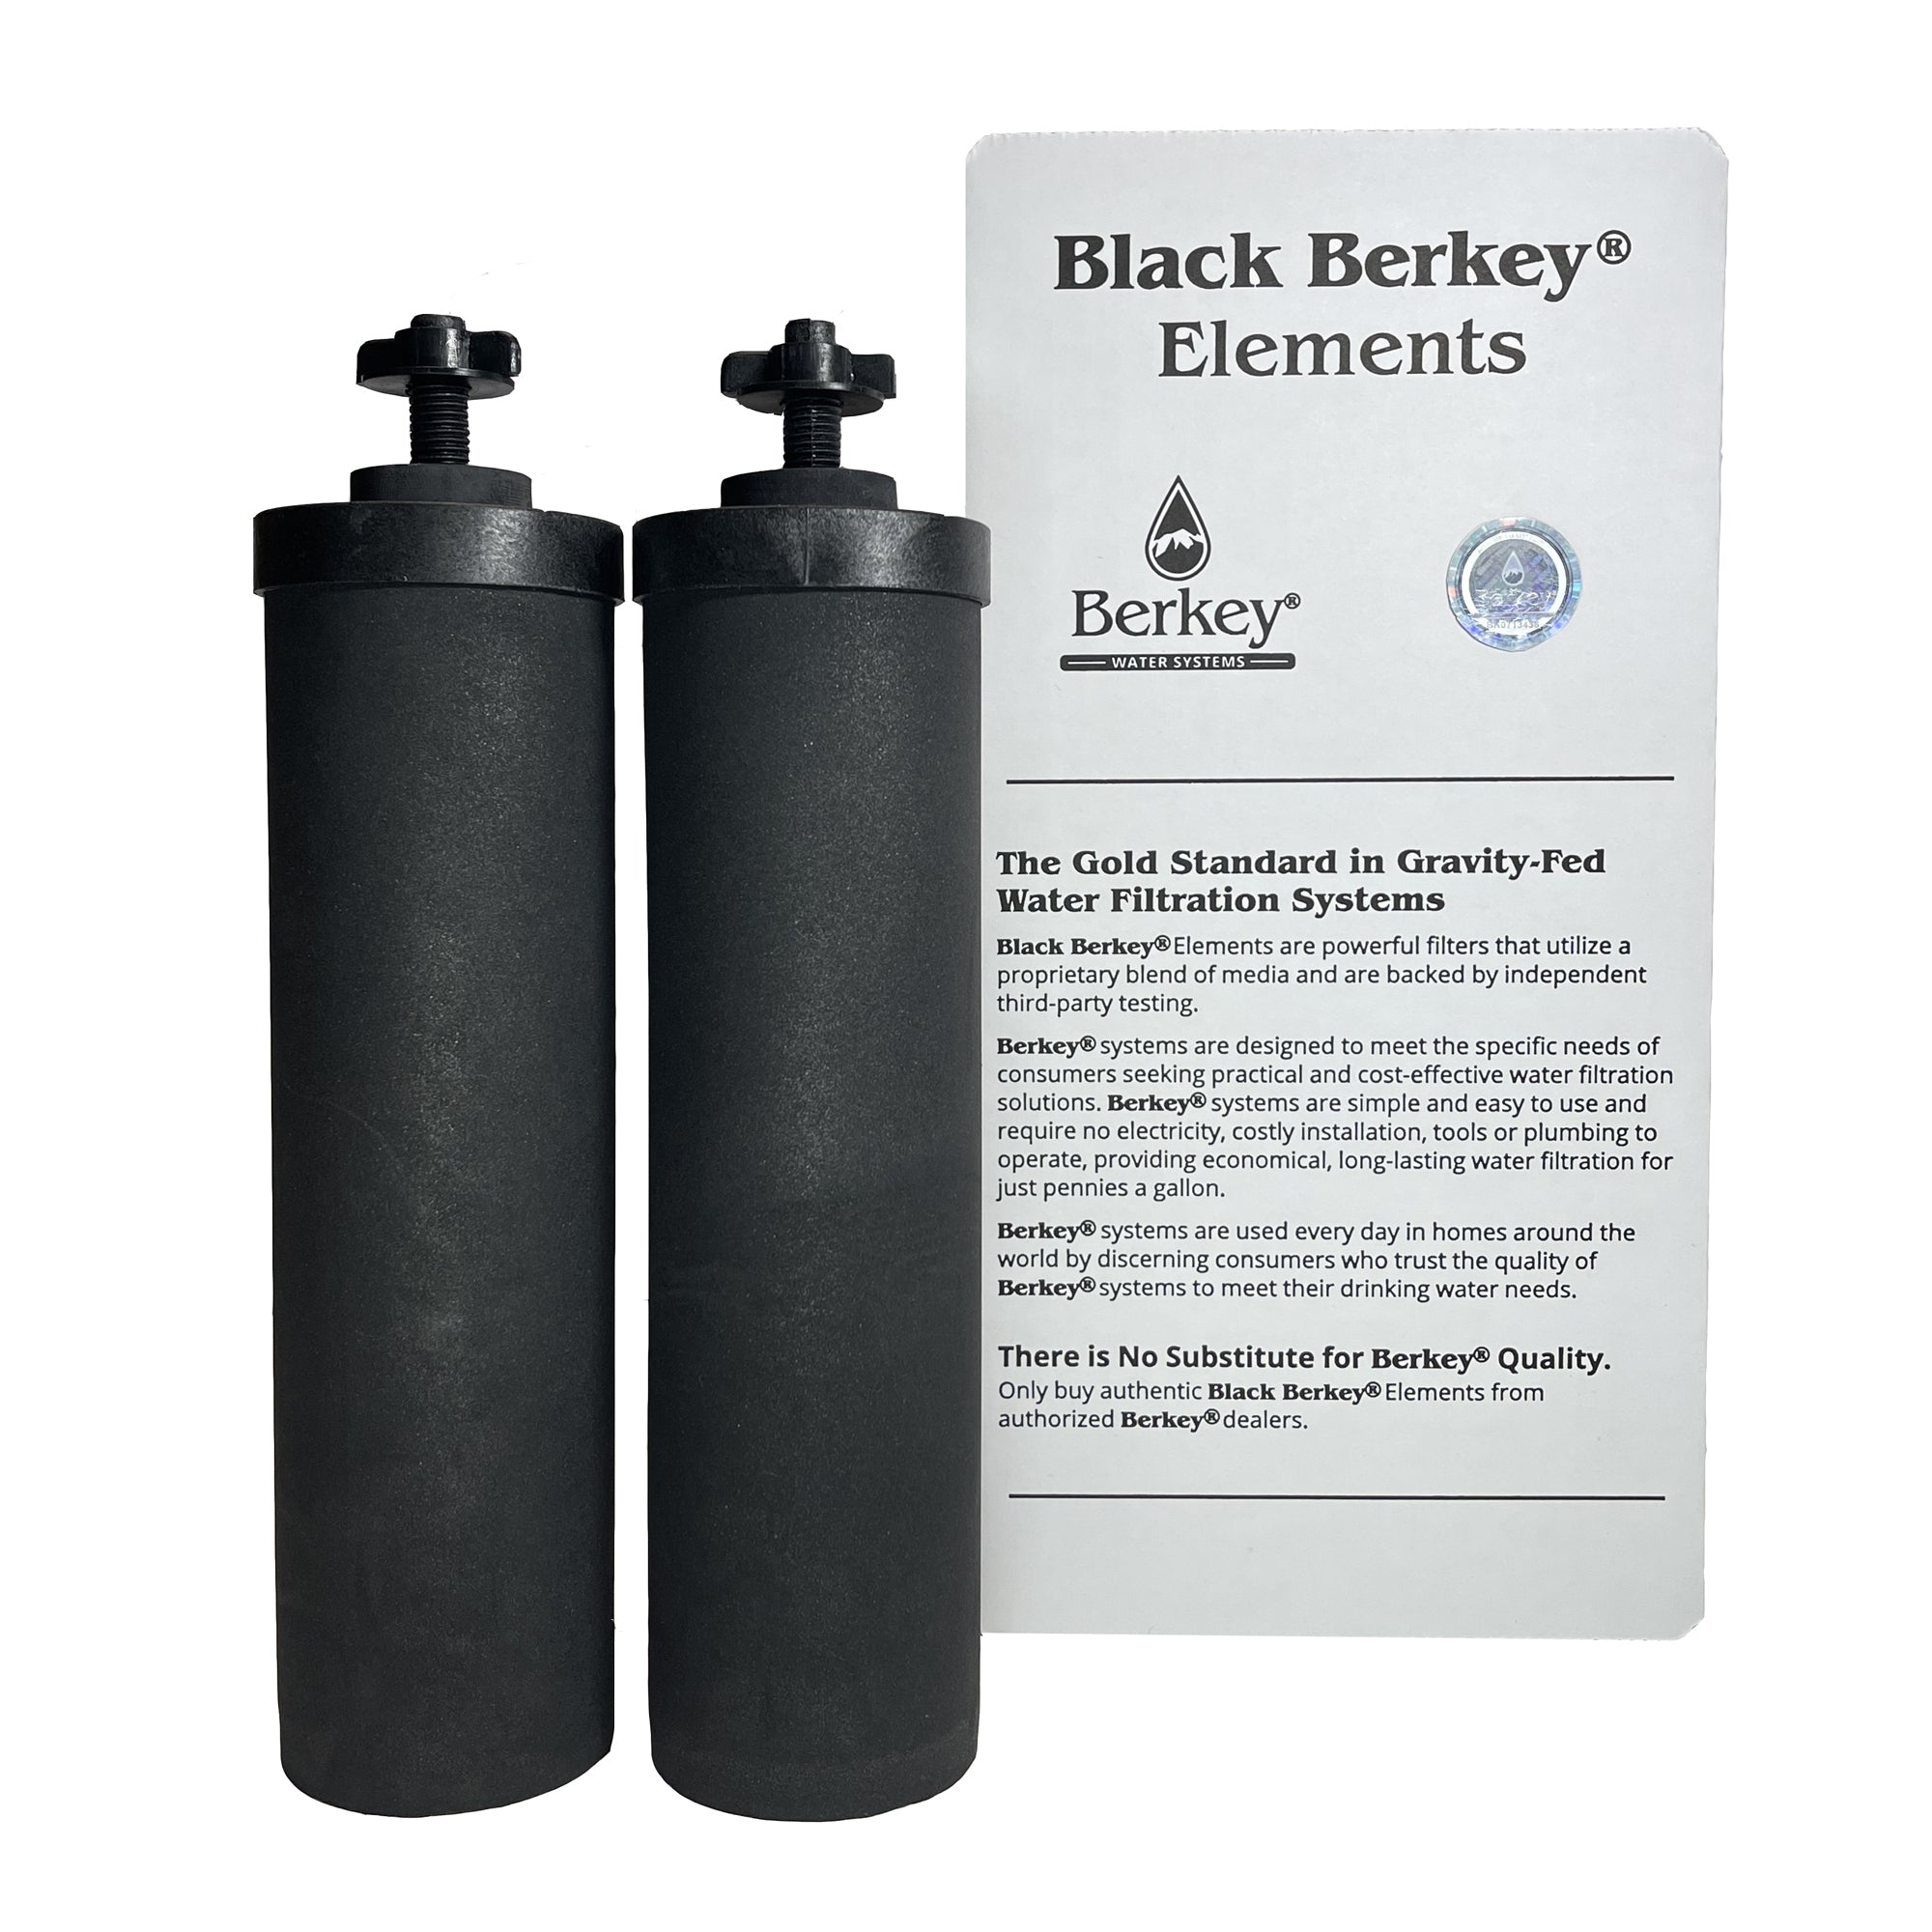 Black Berkey Elements